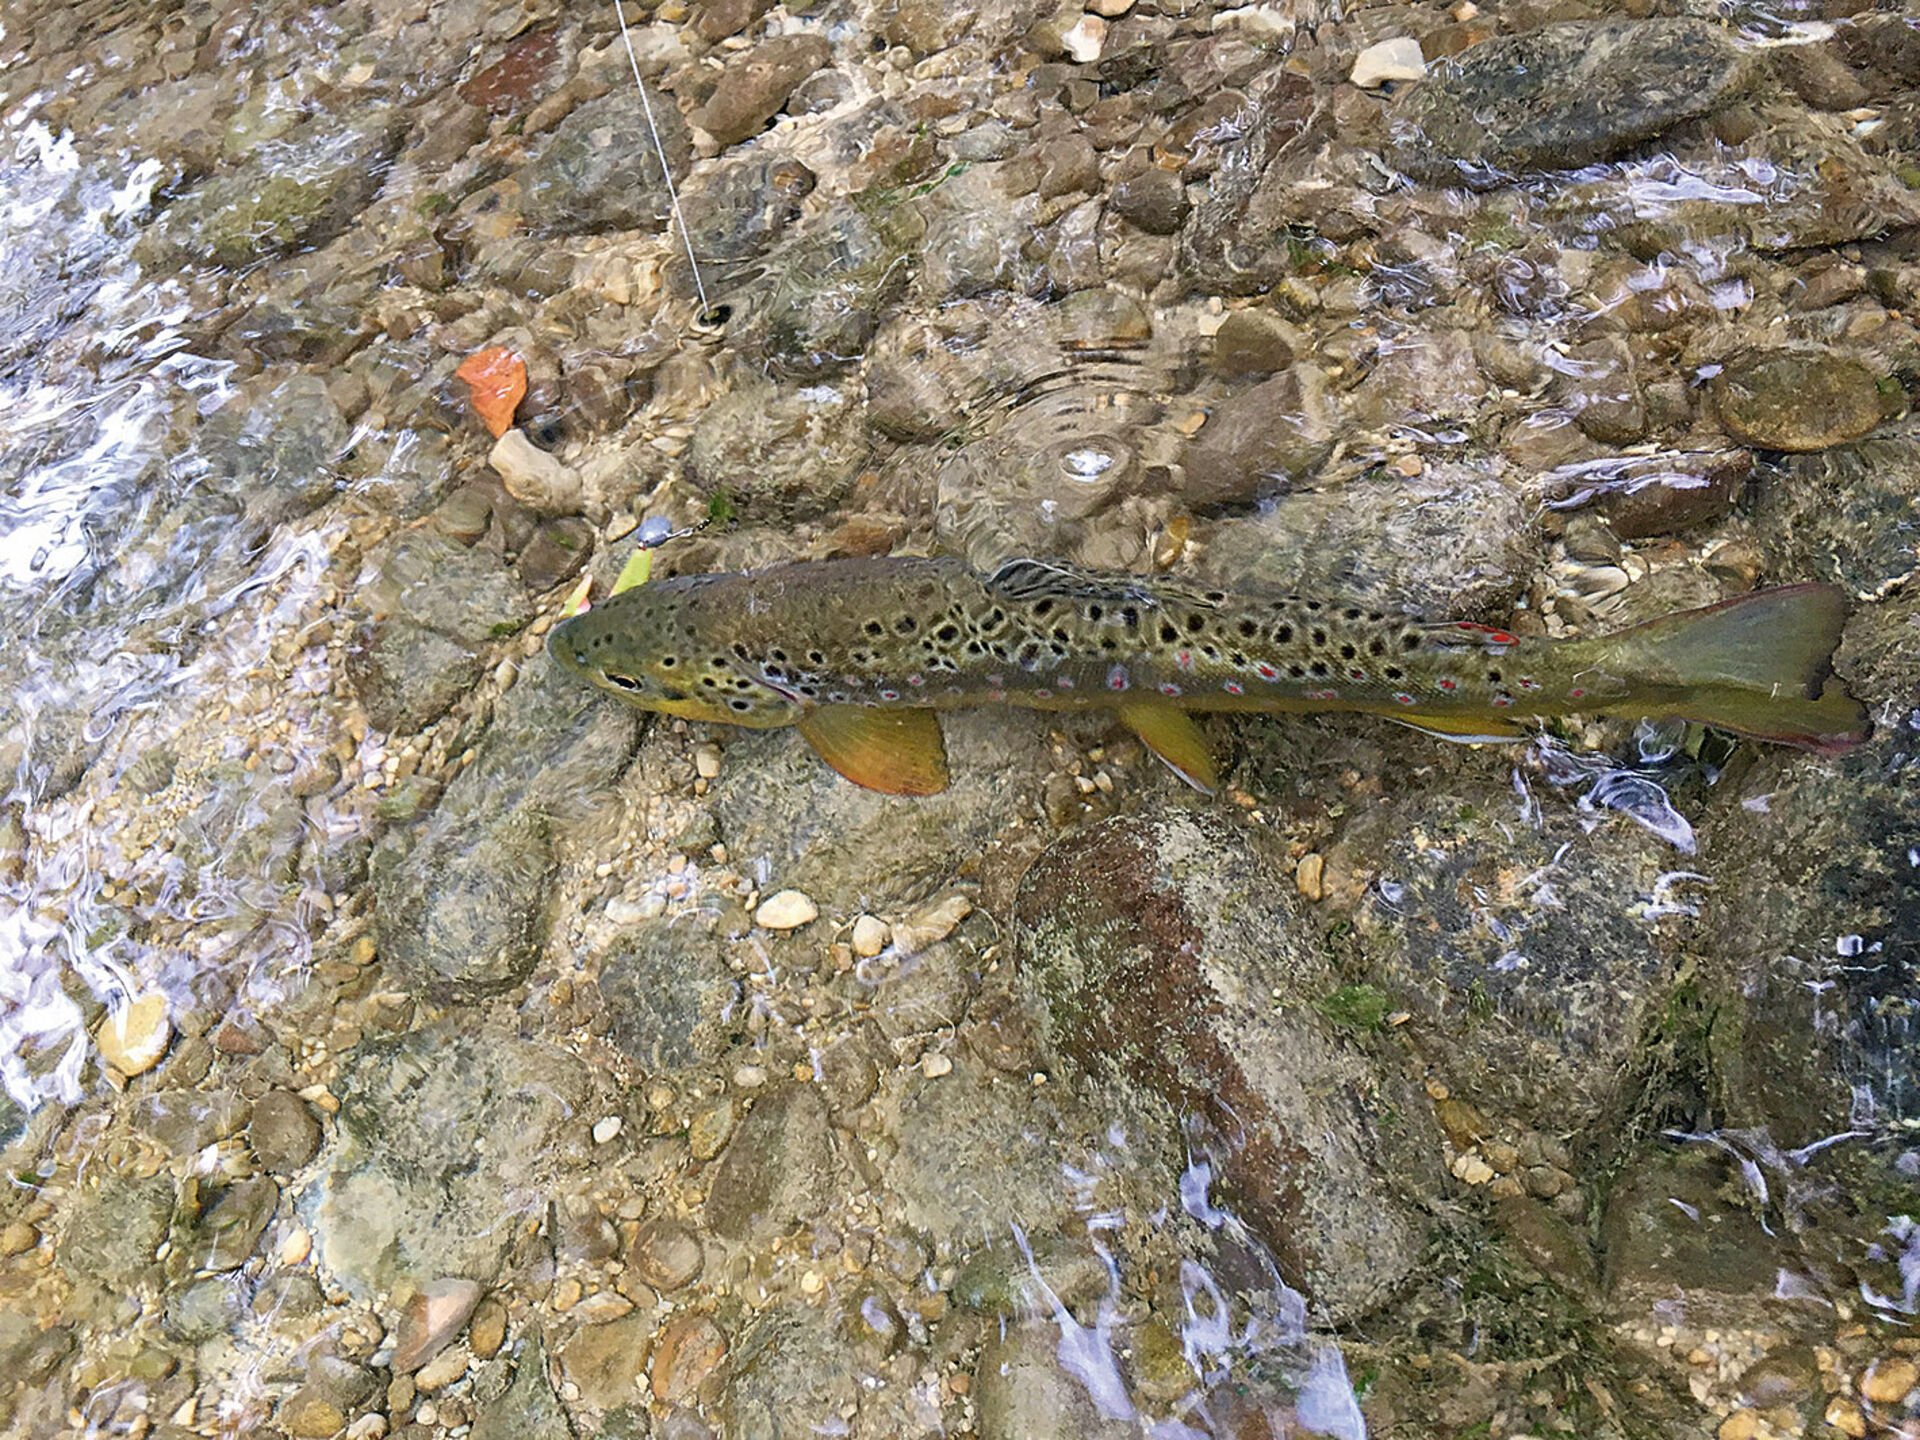  Le poisson en caoutchouc sur une tête de plomb est l'un des favoris de Ronny sur le ruisseau.  